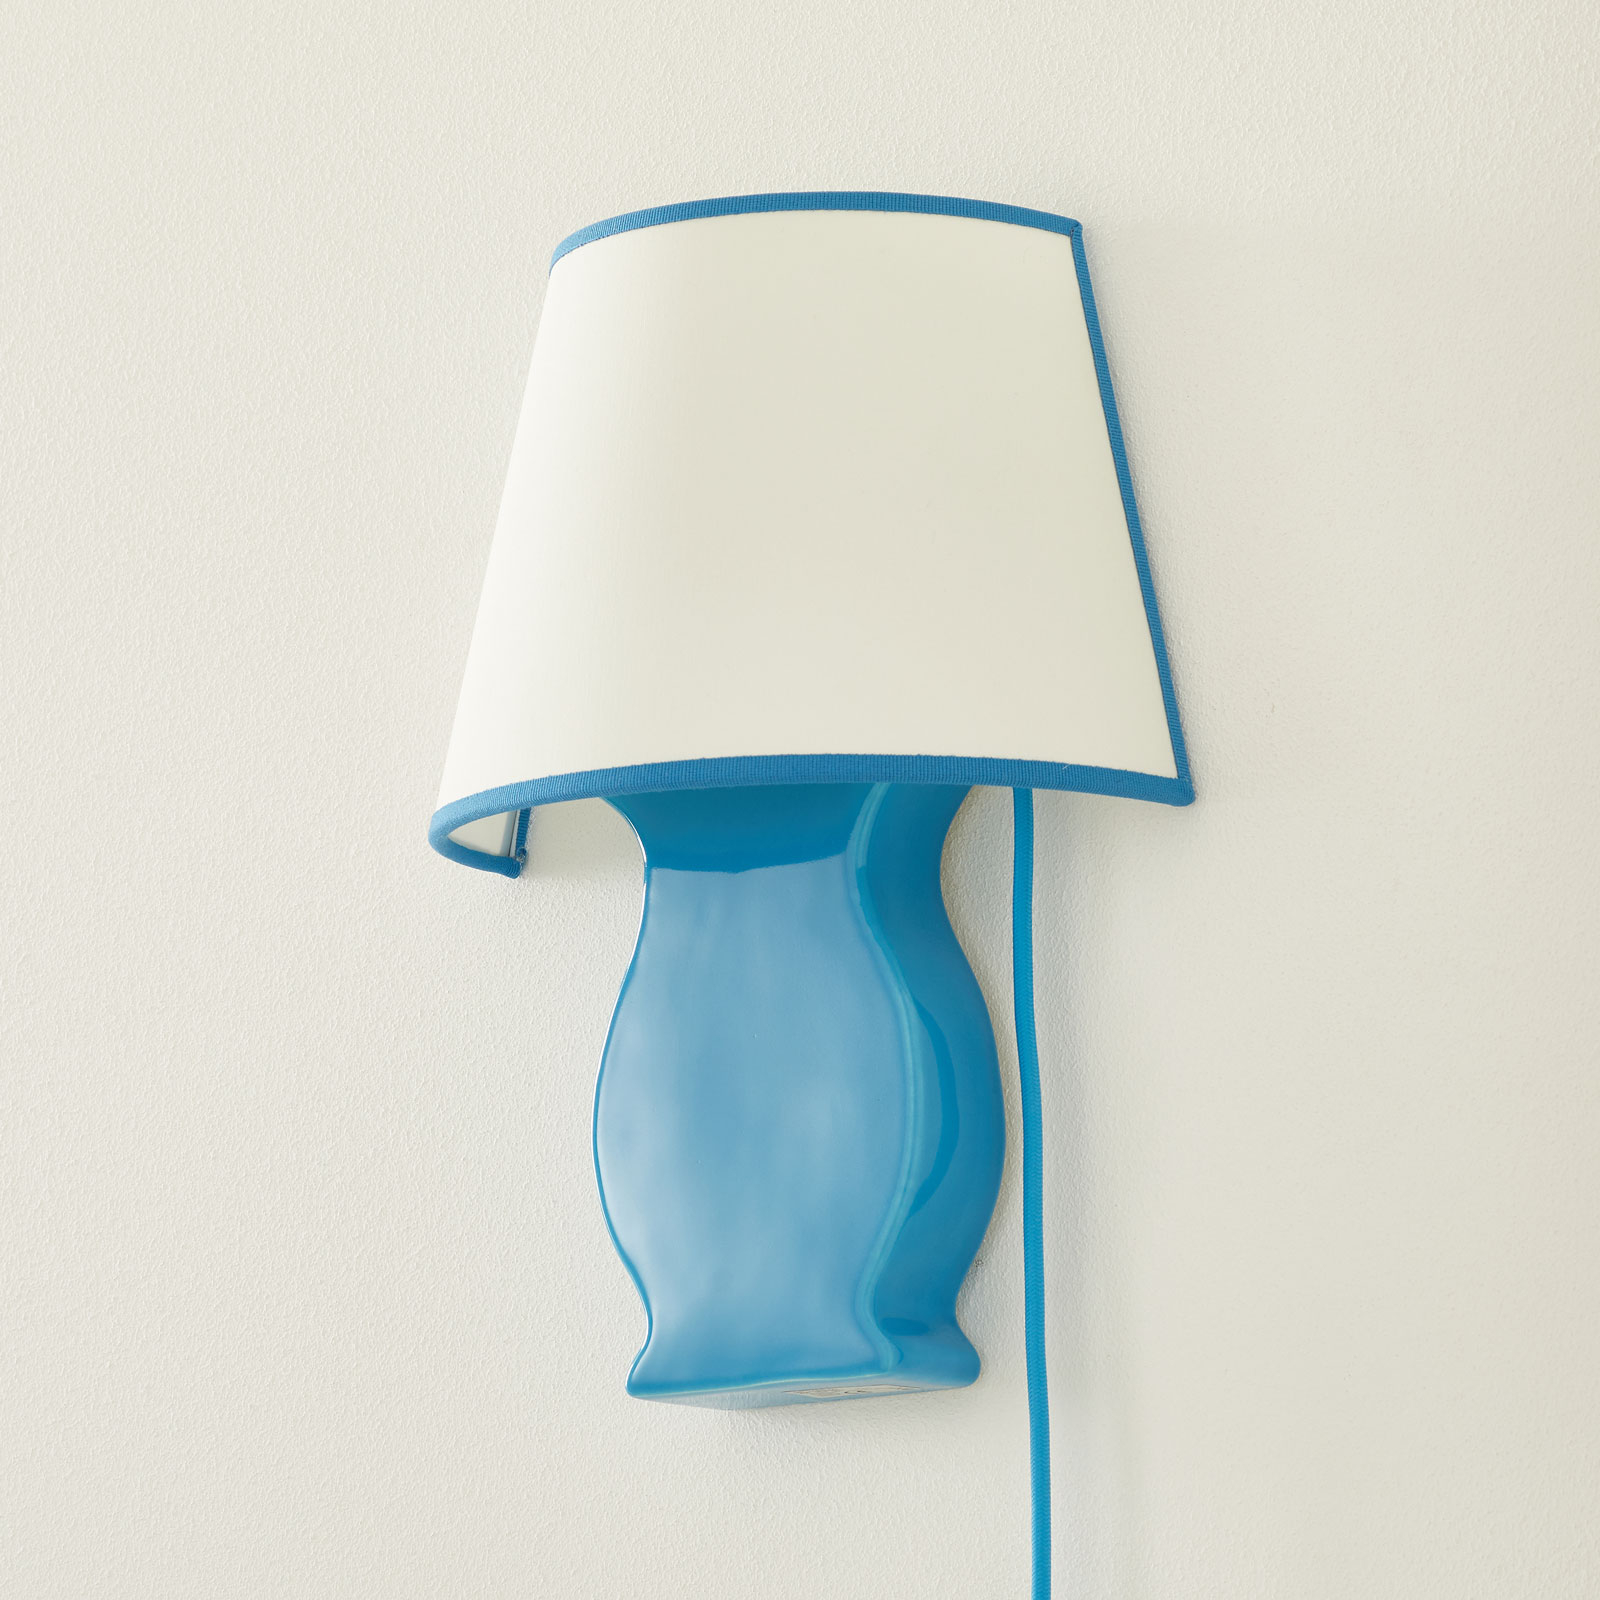 Keramiek-wandlamp A184 met stoffen kap, blauw